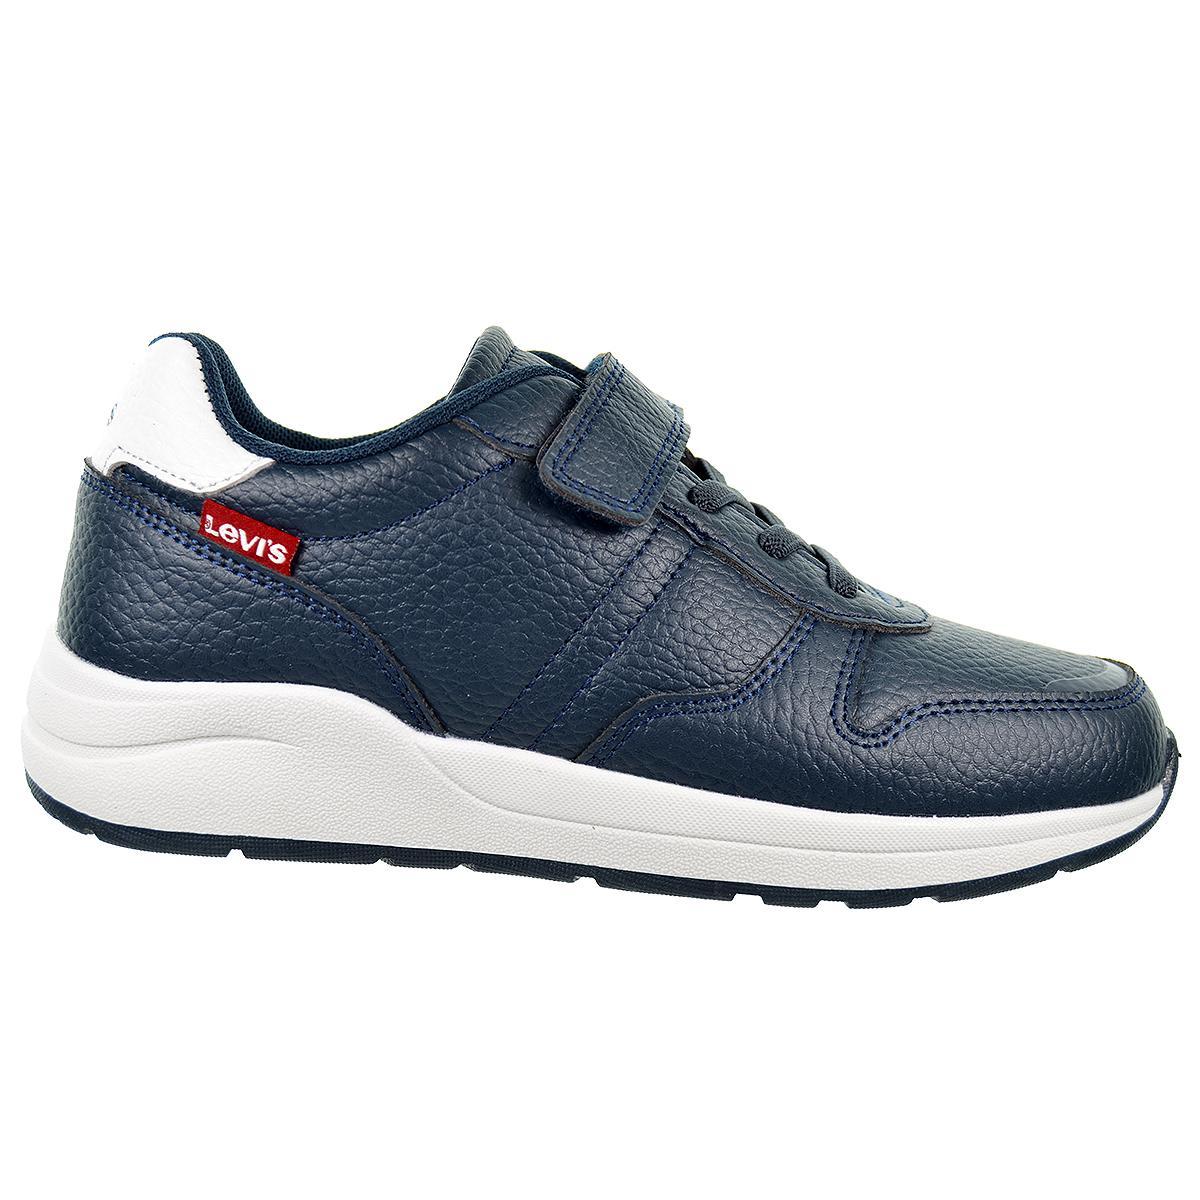 Baylor Levi´s Zapato Casual sport sintético. Forro y plantilla textil acolchado. cordones y velcro . Piso caucho antideslizante.